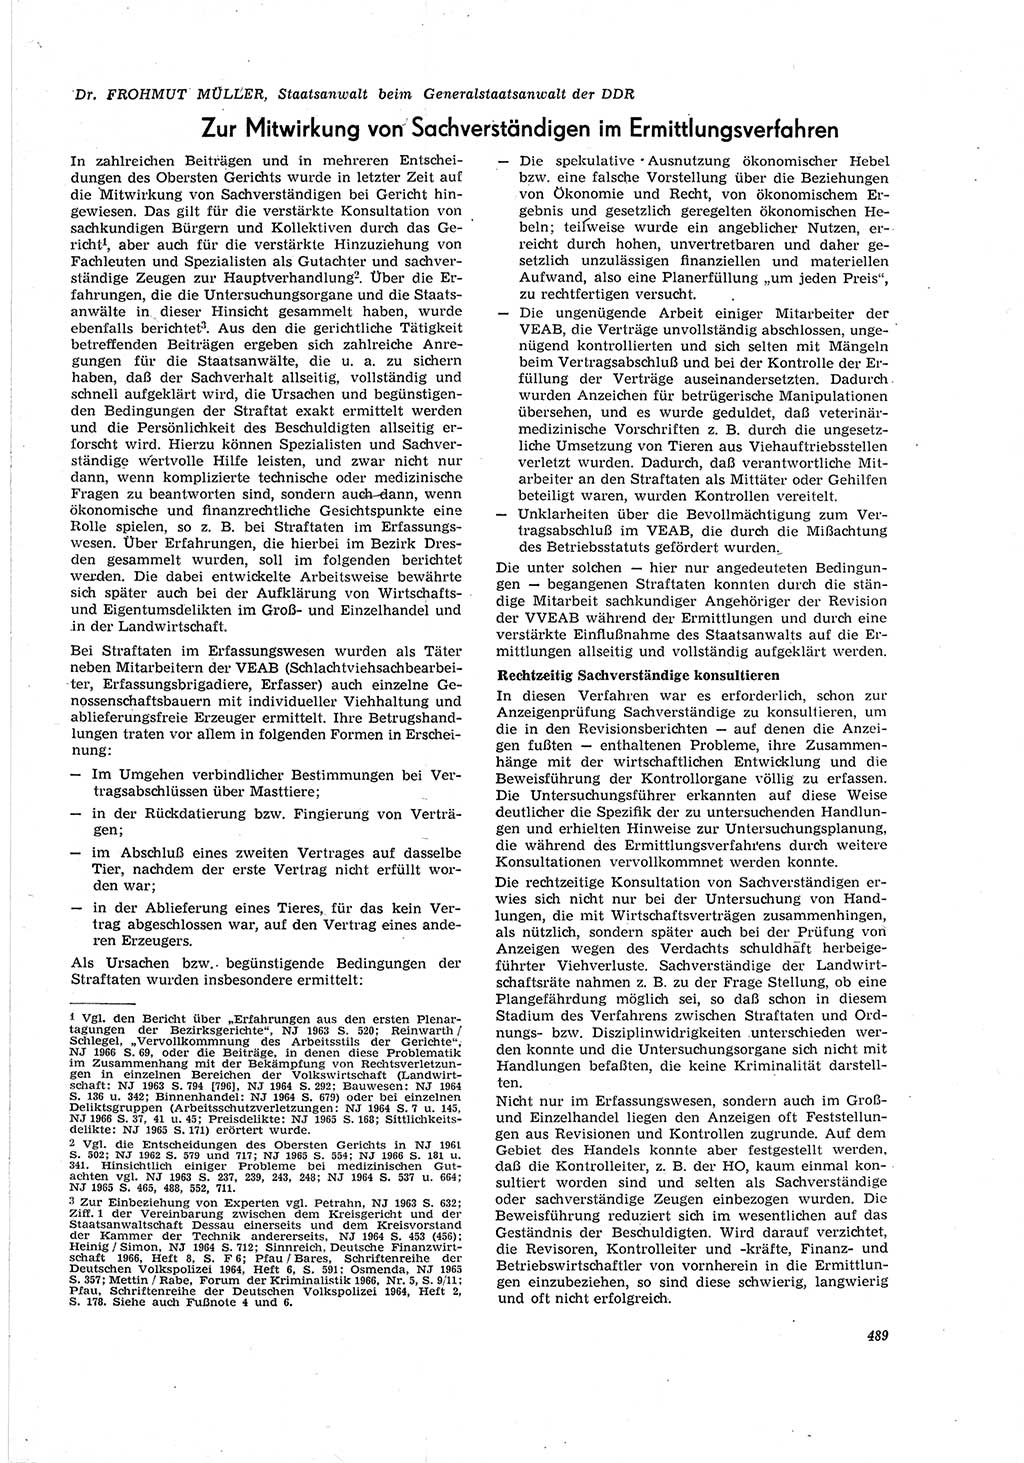 Neue Justiz (NJ), Zeitschrift für Recht und Rechtswissenschaft [Deutsche Demokratische Republik (DDR)], 20. Jahrgang 1966, Seite 489 (NJ DDR 1966, S. 489)